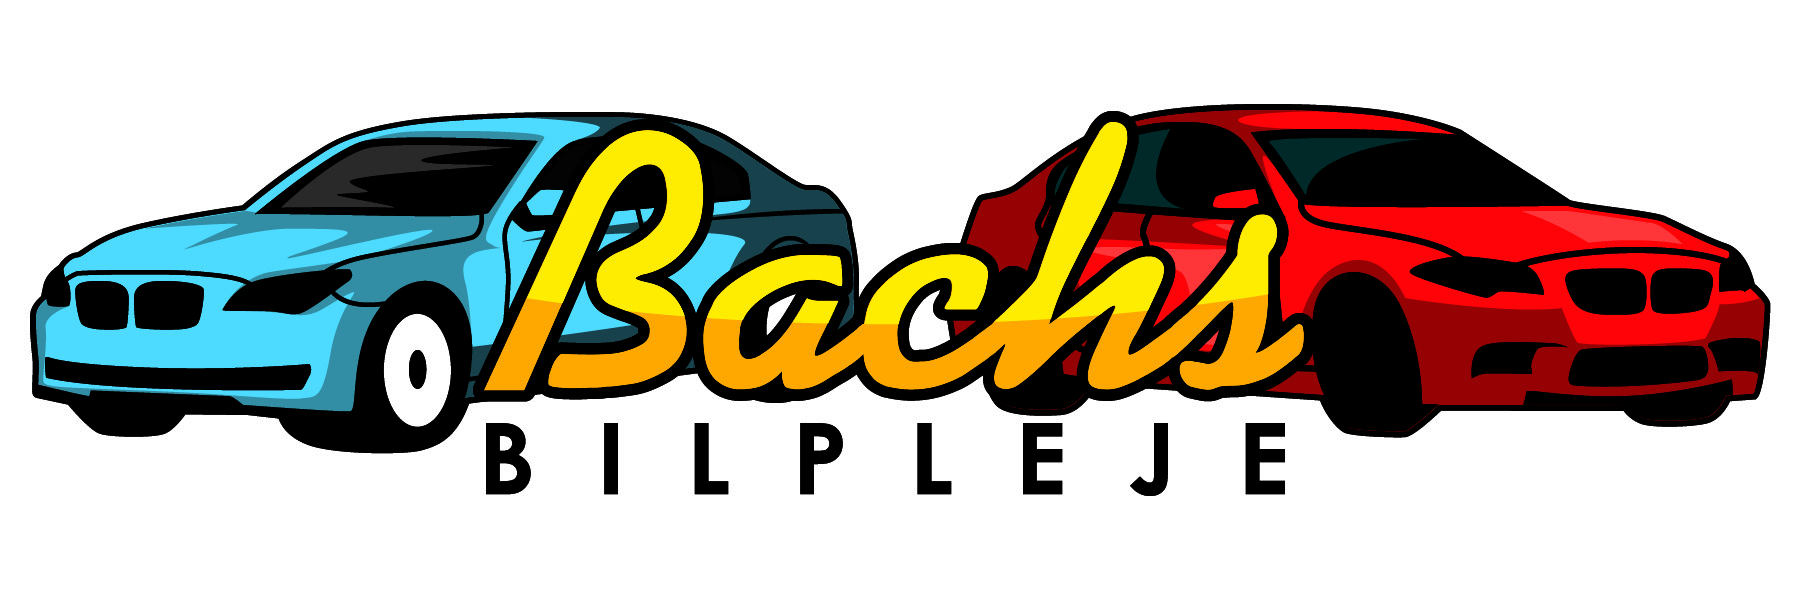 Bachs Bilpleje Shop